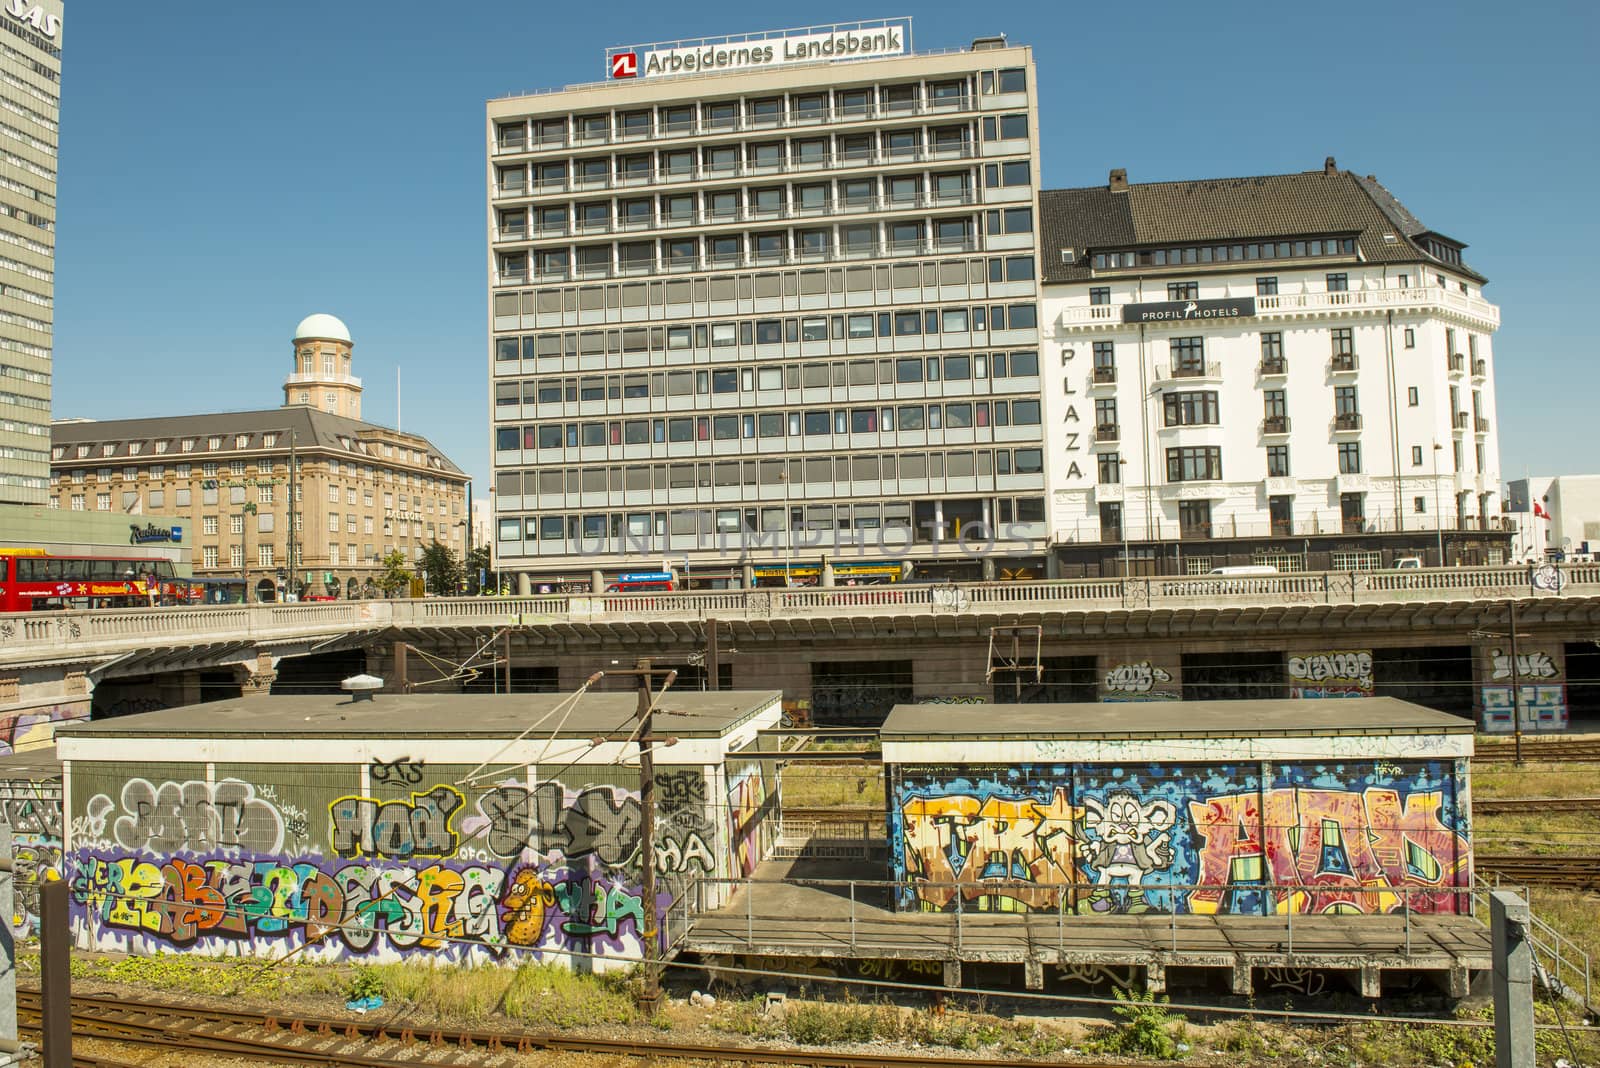 Copenhagen, Denmark - August 2012. Drawings of graffiti near the railway station in Copenhagen.